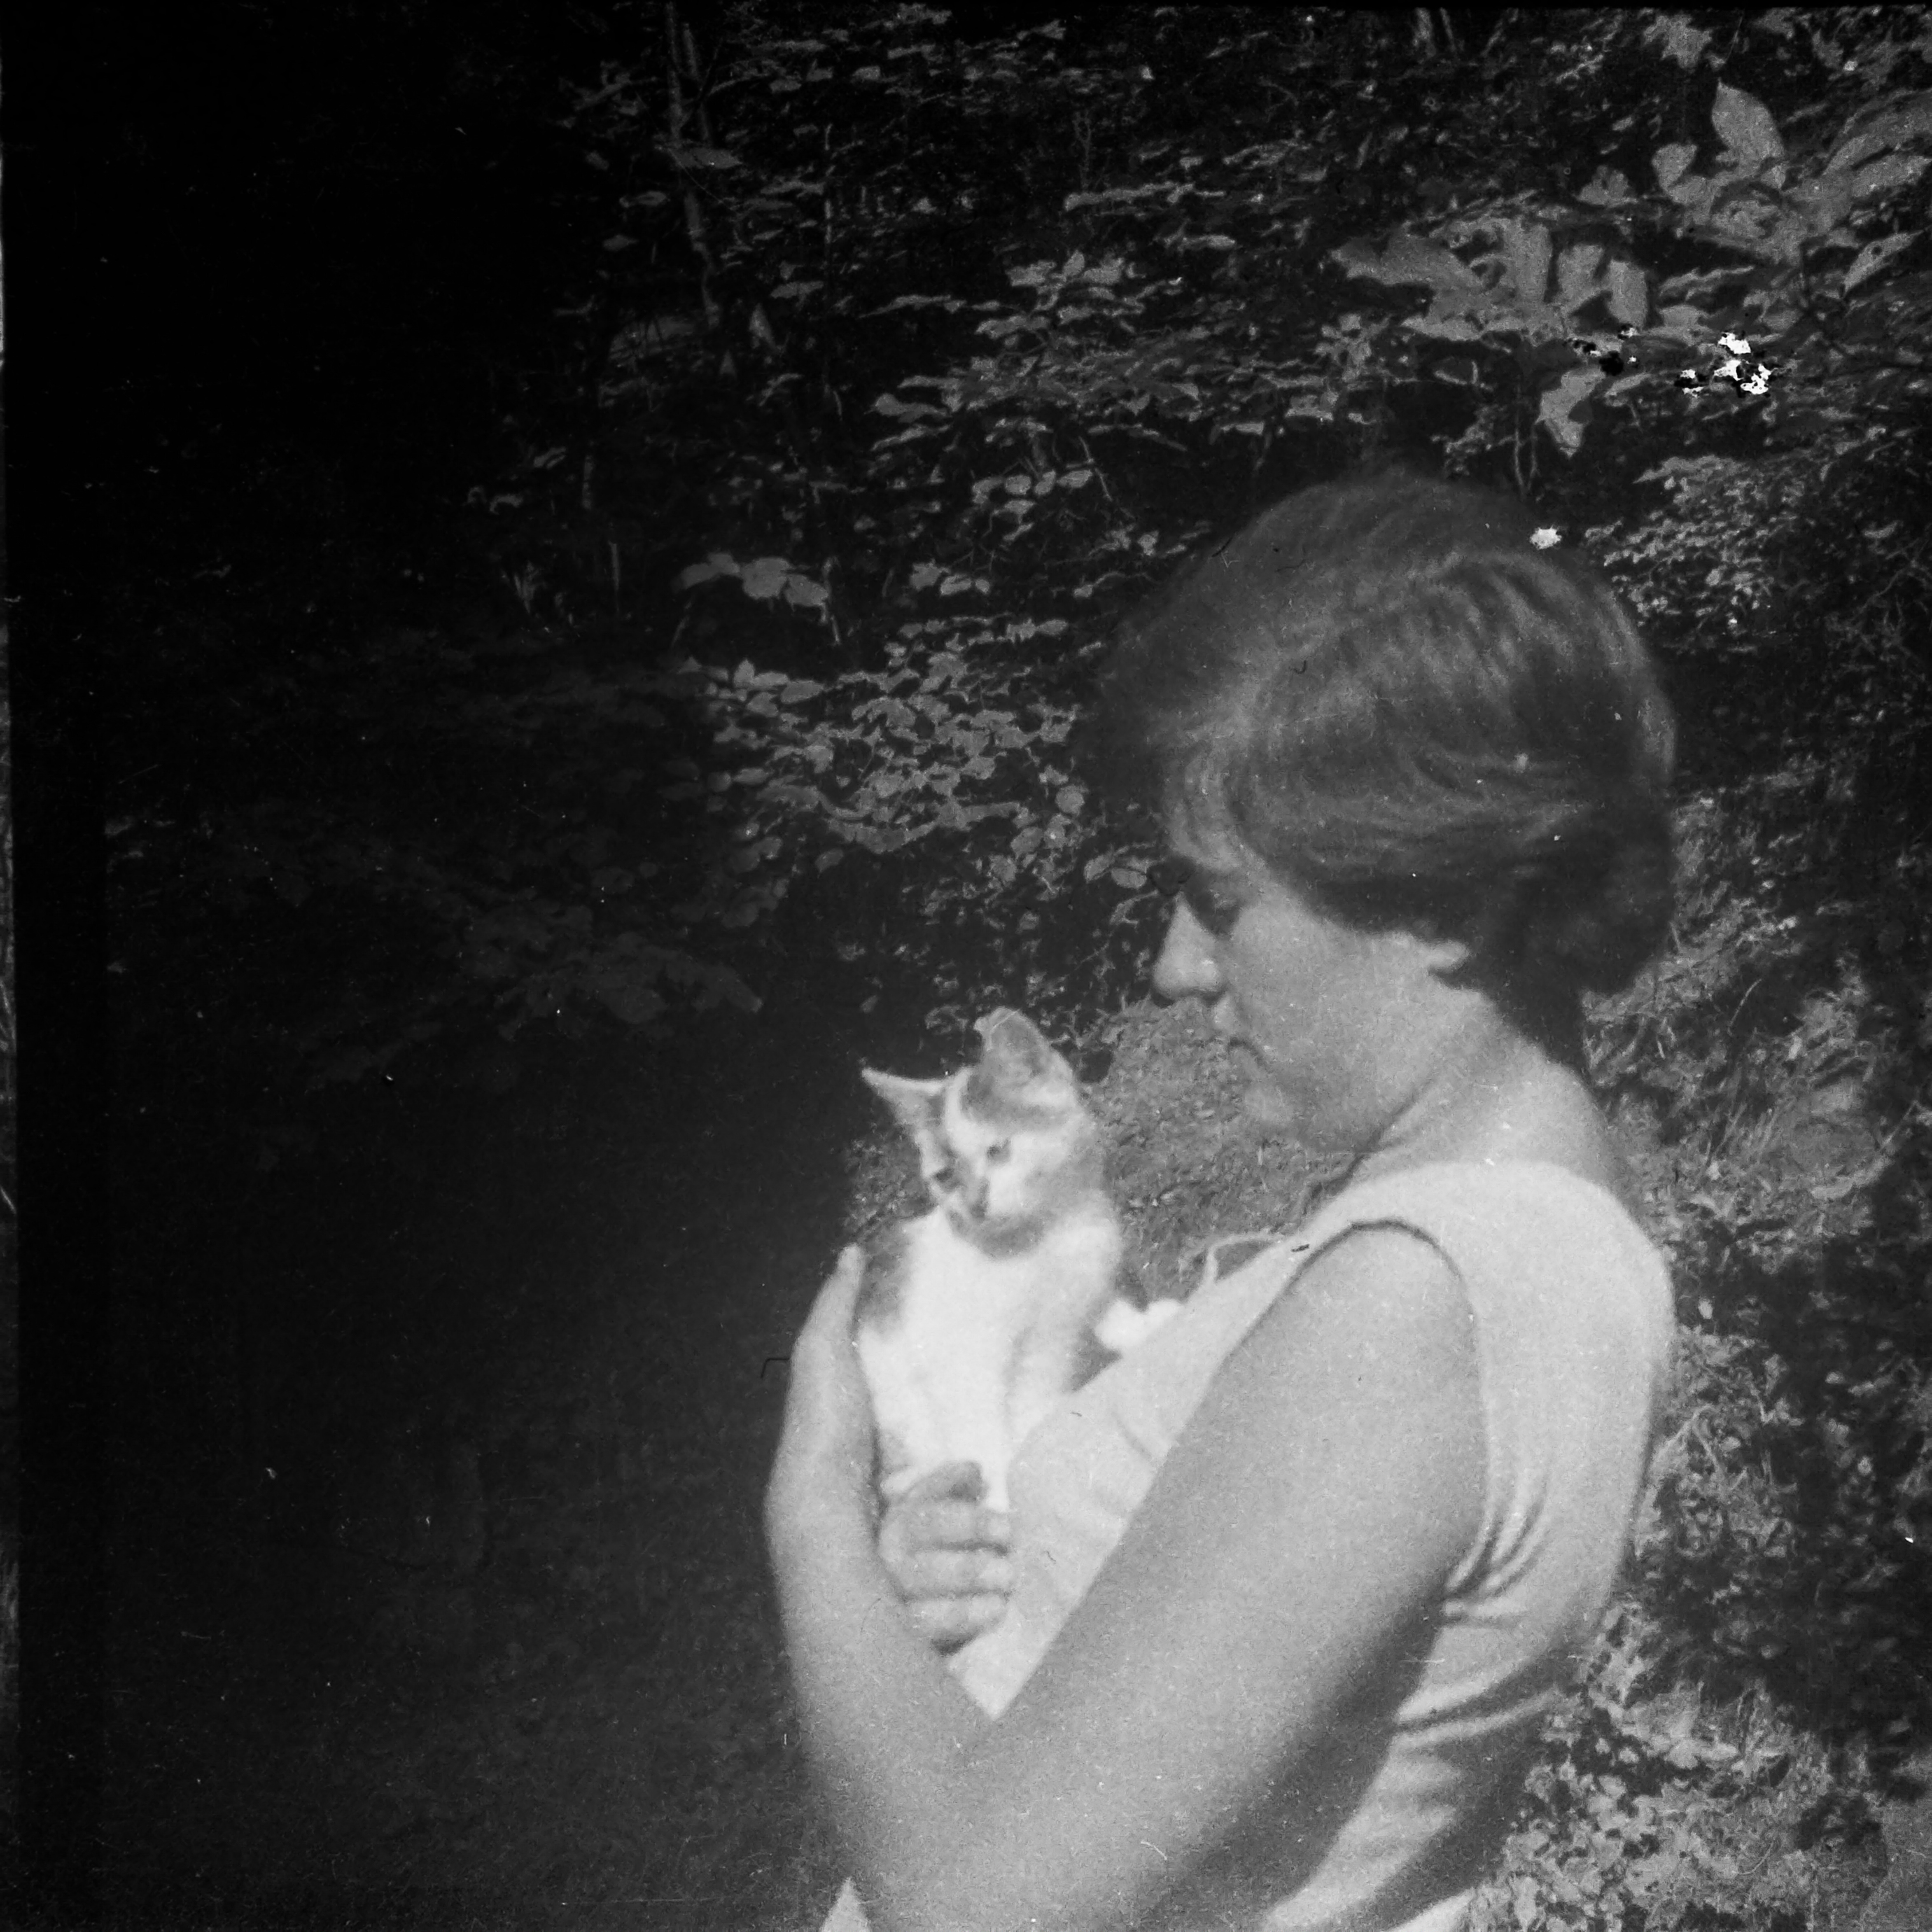 Věra with a kitten 